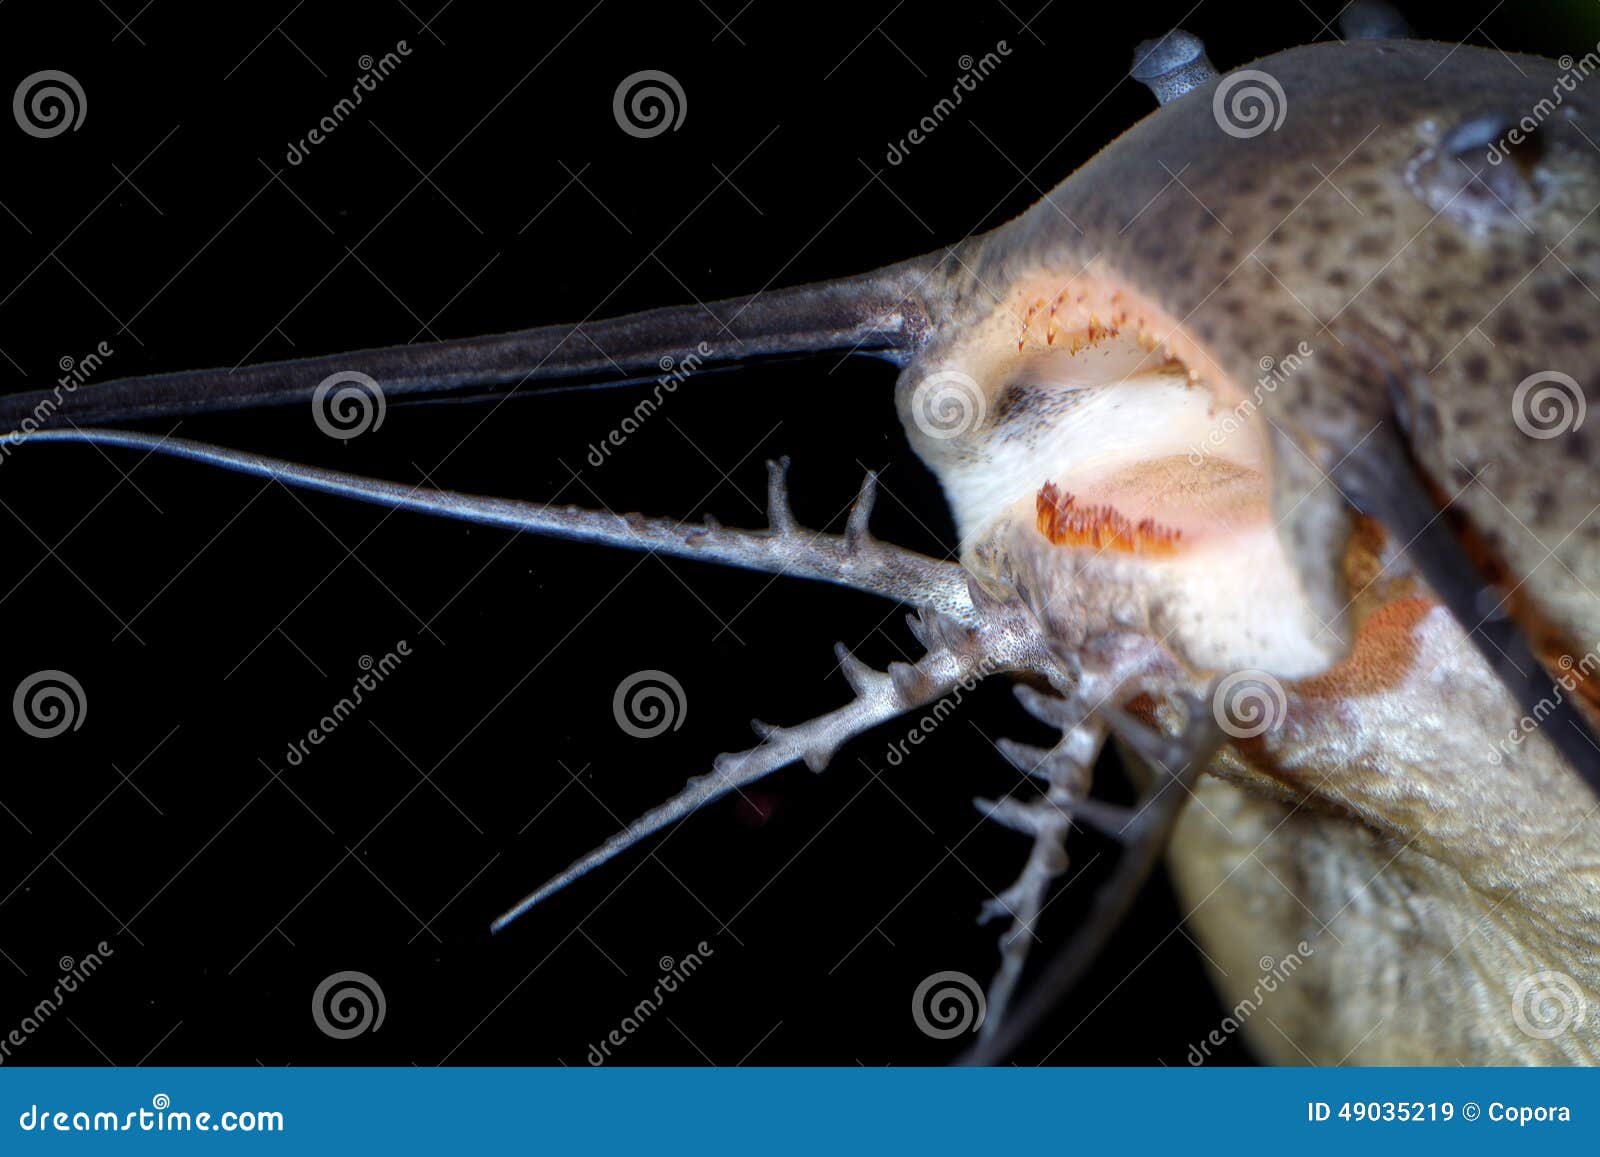 Catfish barbels stock image. Image of background, nature - 49035219